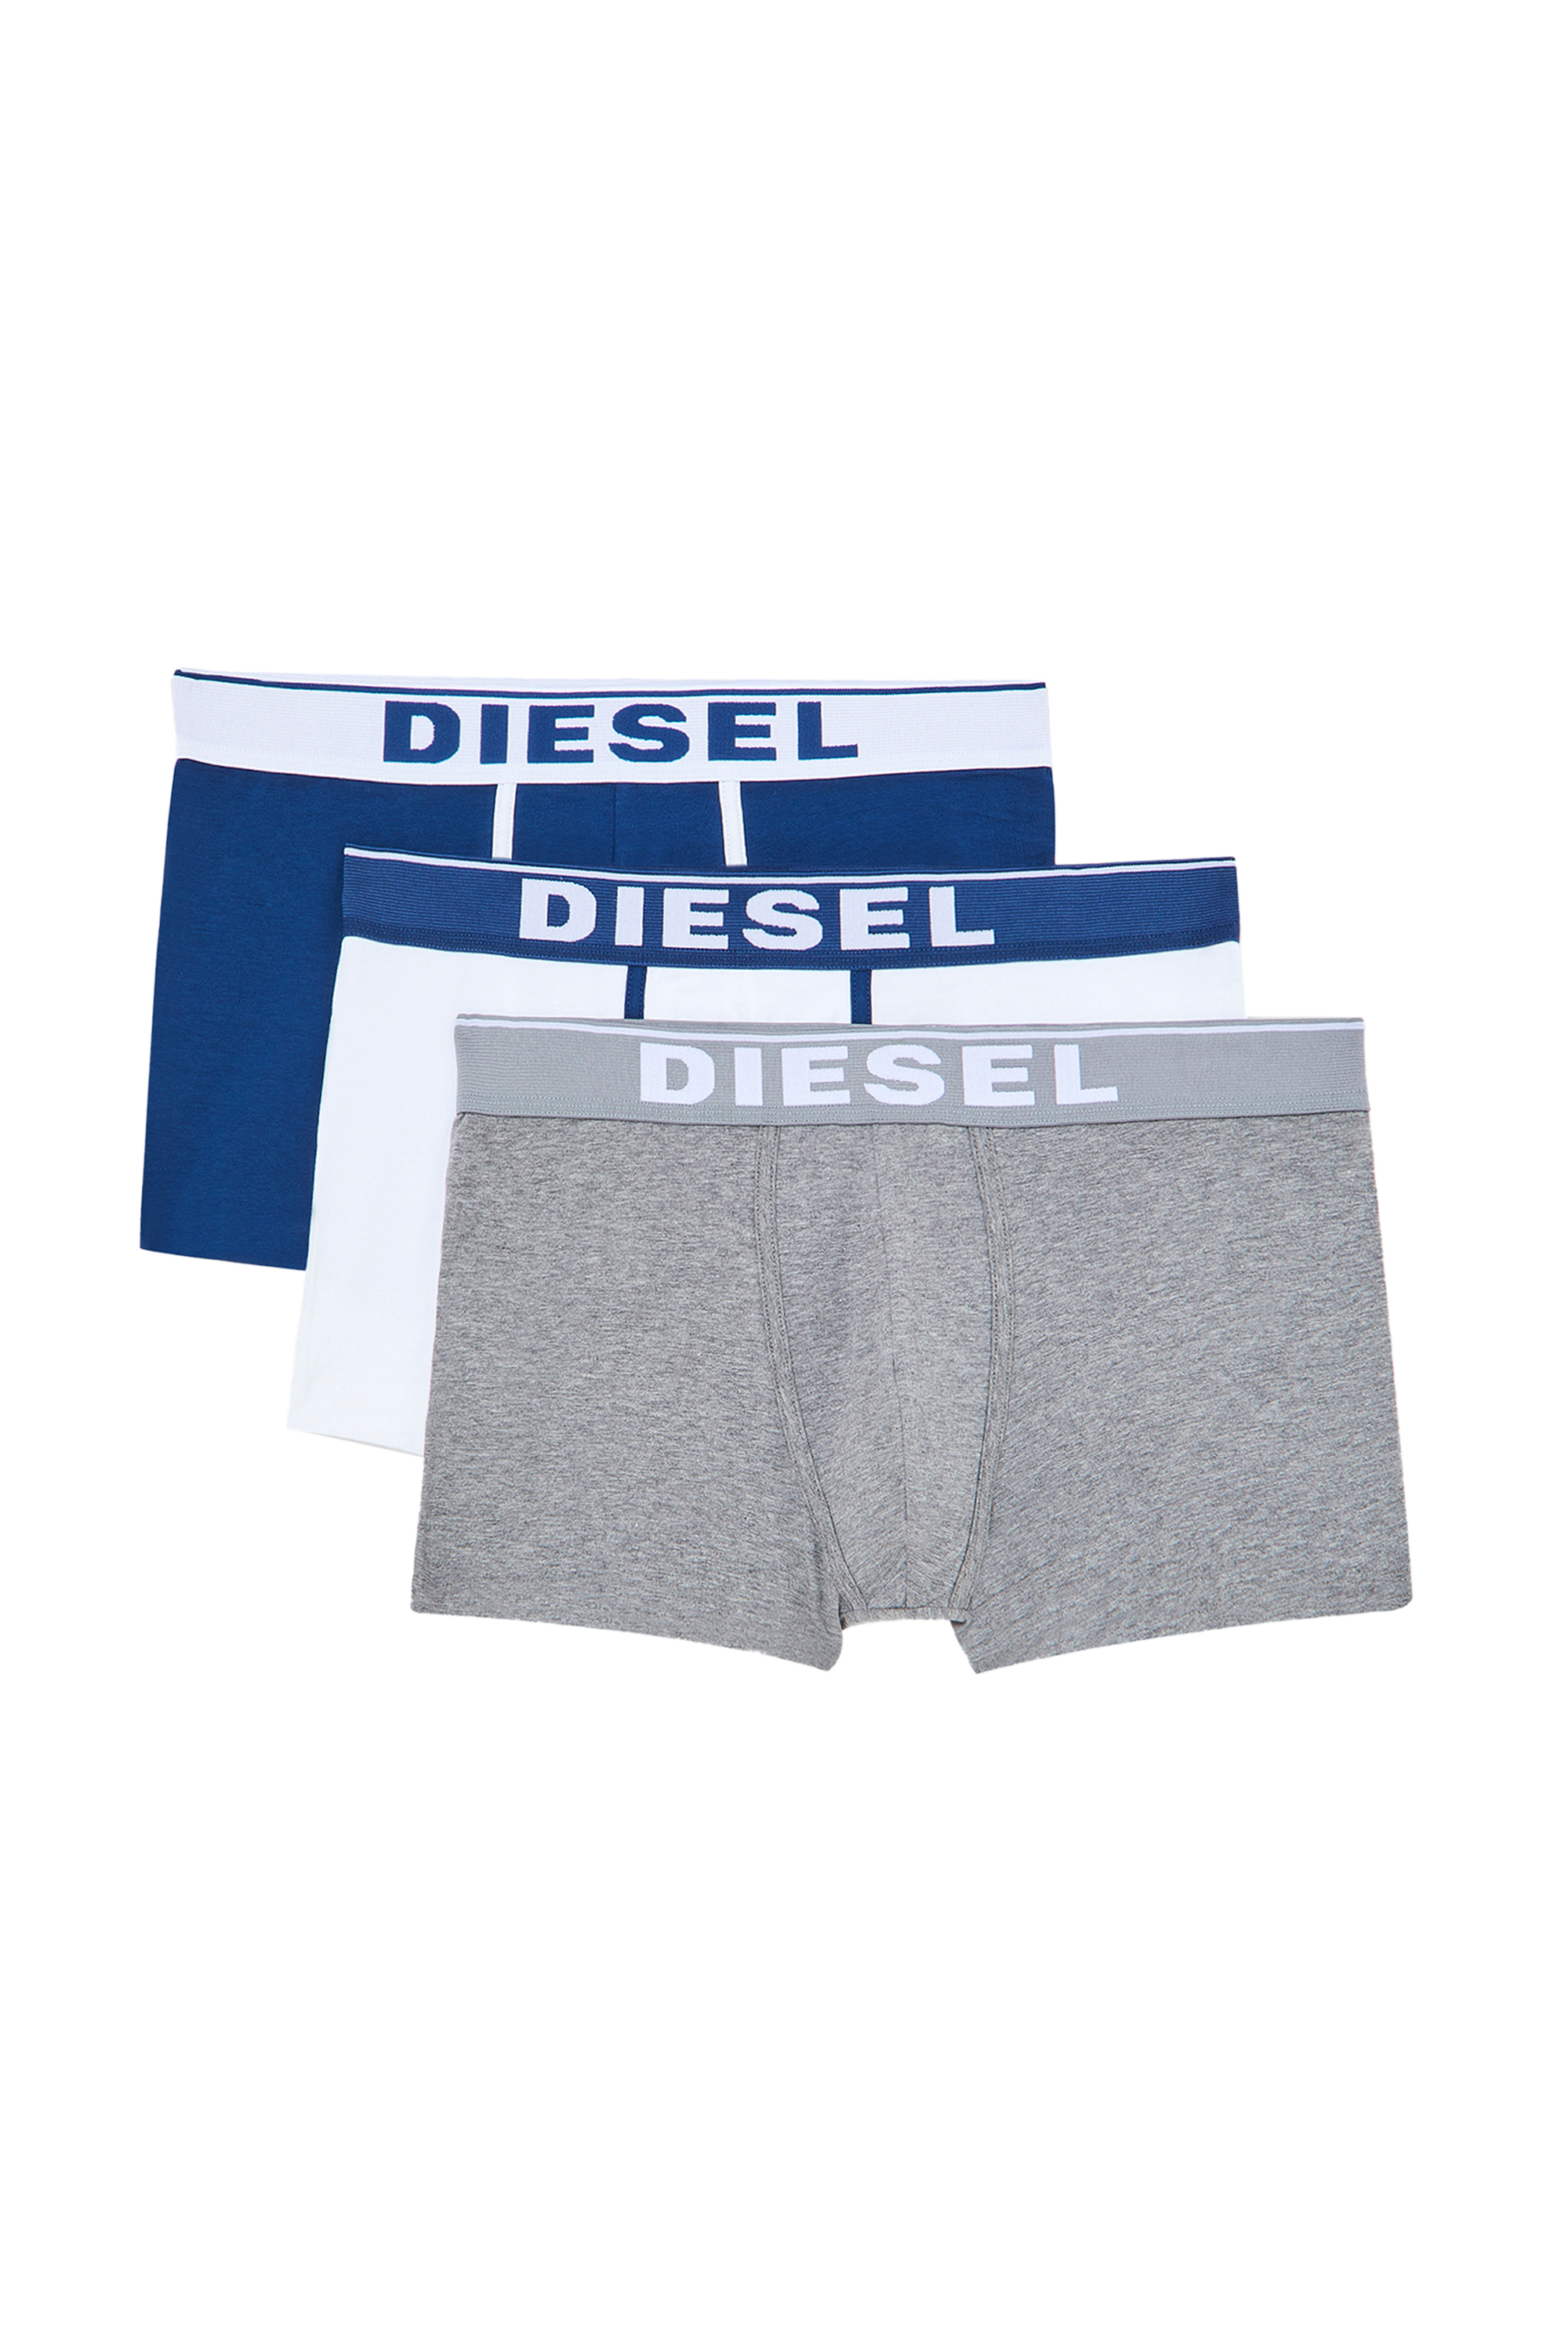 Diesel - UMBX-DAMIENTHREEPACK, White/Blue - Image 2